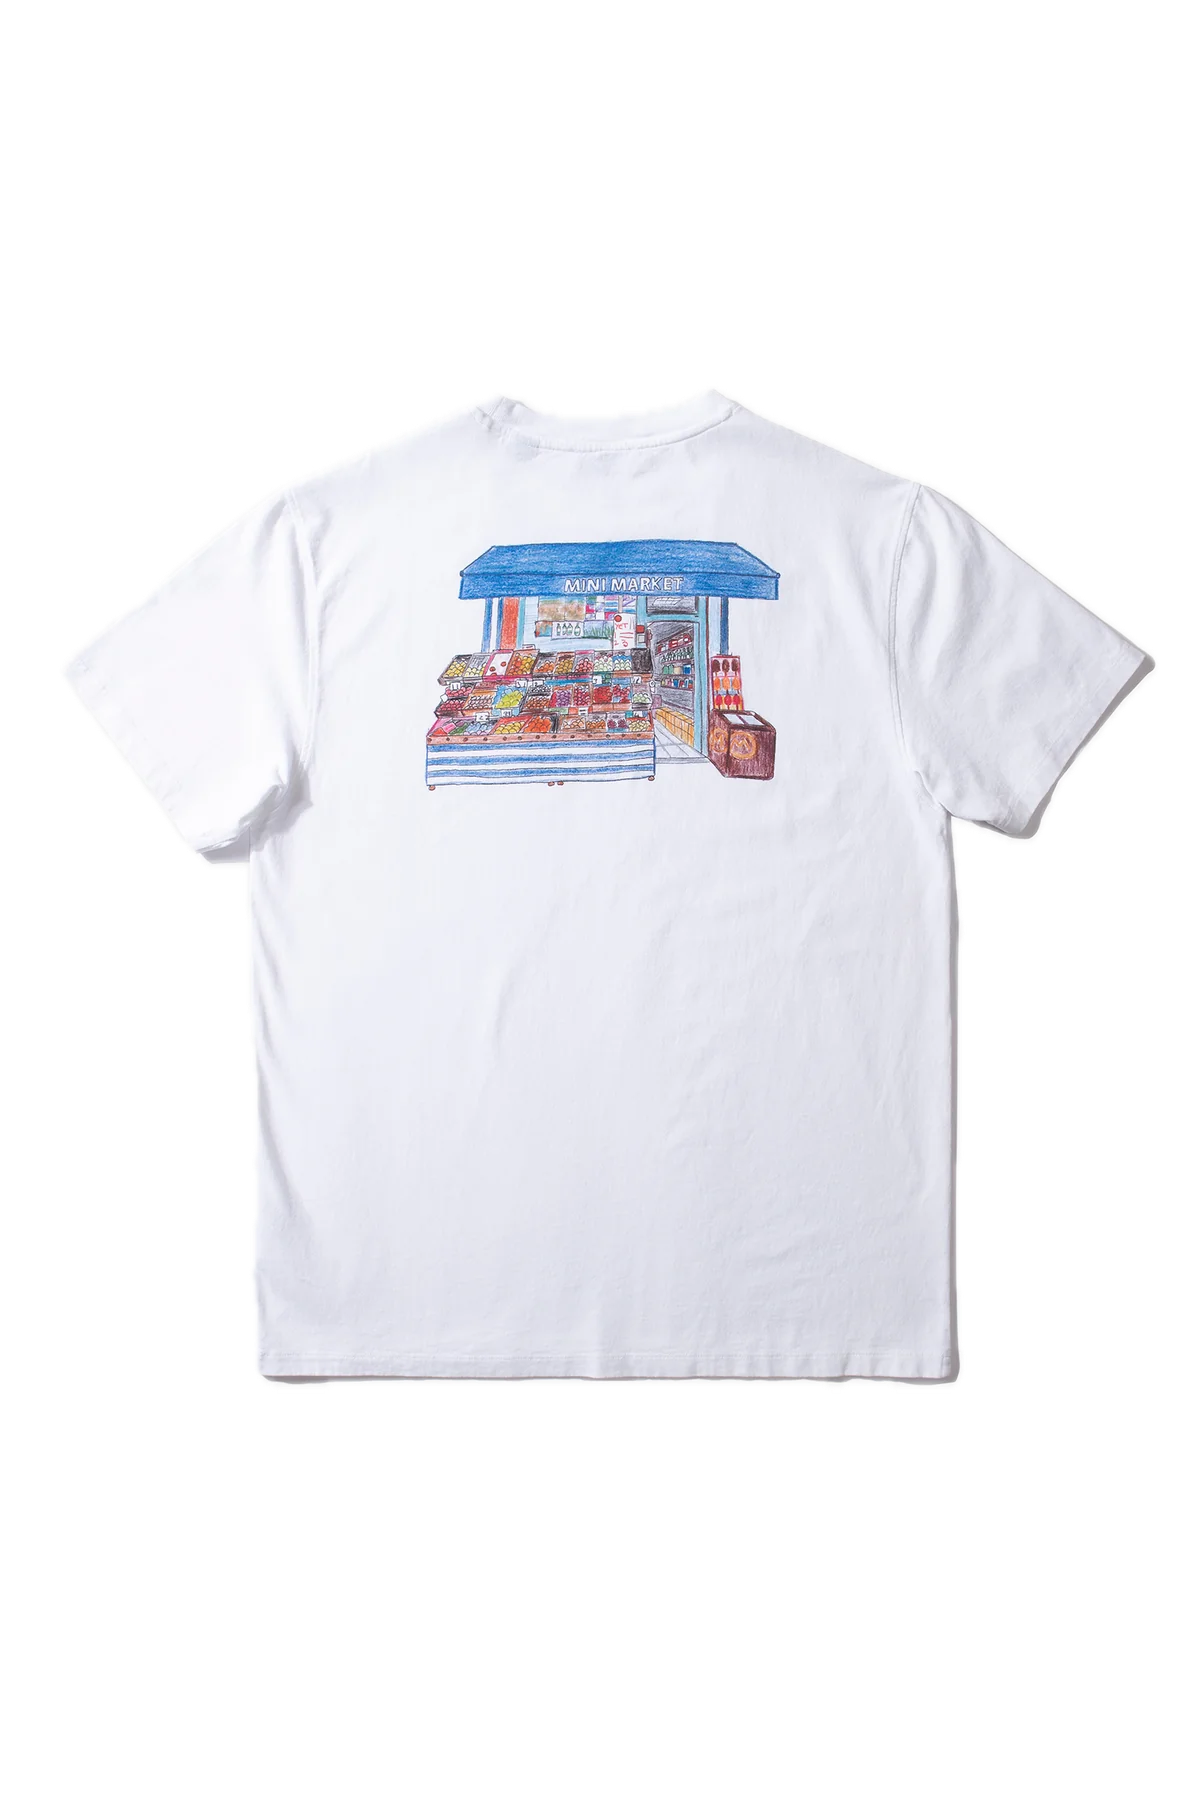 Edmmond Studios Mini Market Weißes T-Shirt